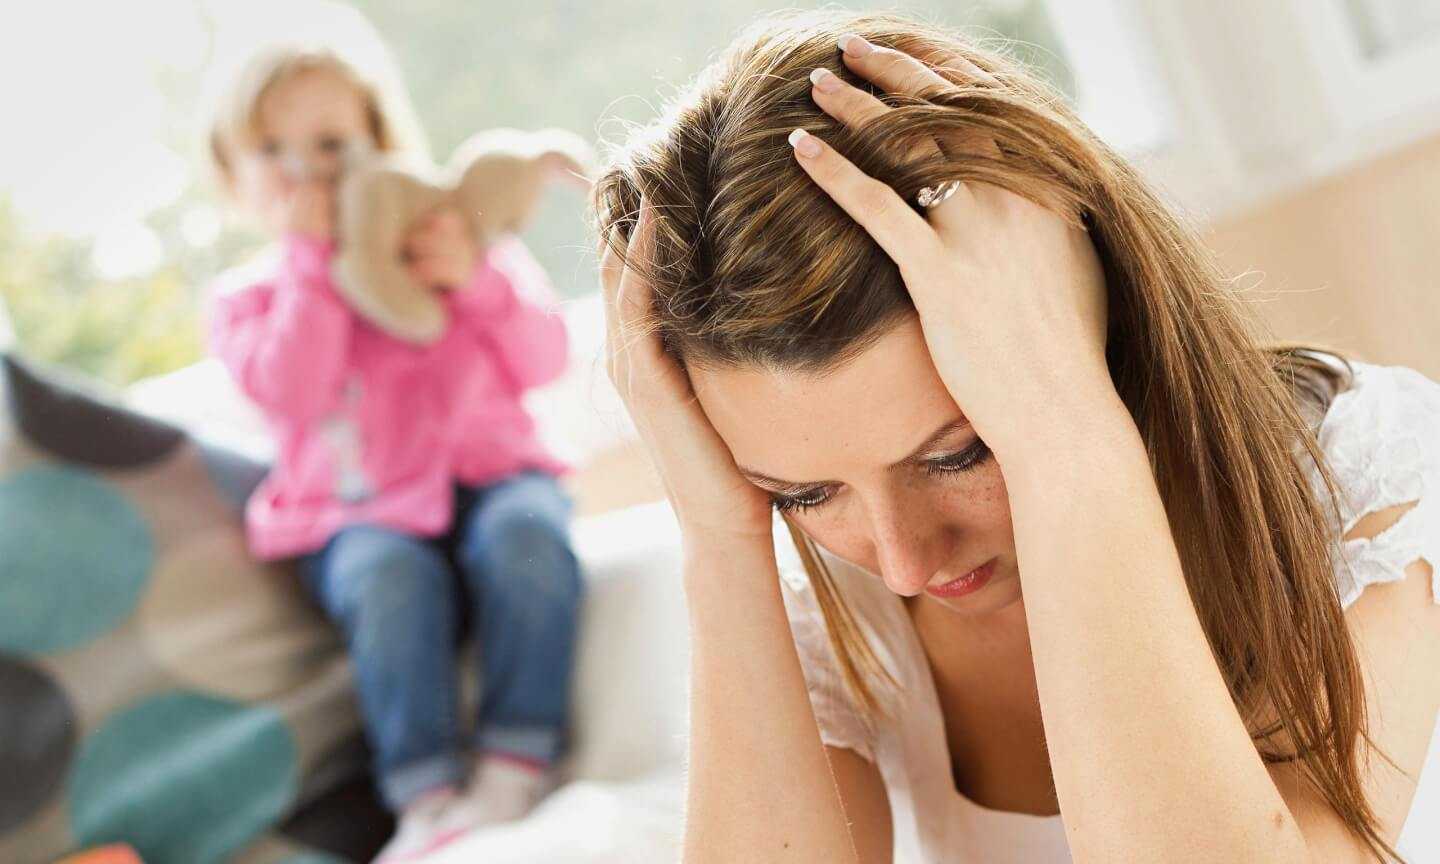 Комплекс плохой матери: как от него избавиться?  советы психолога